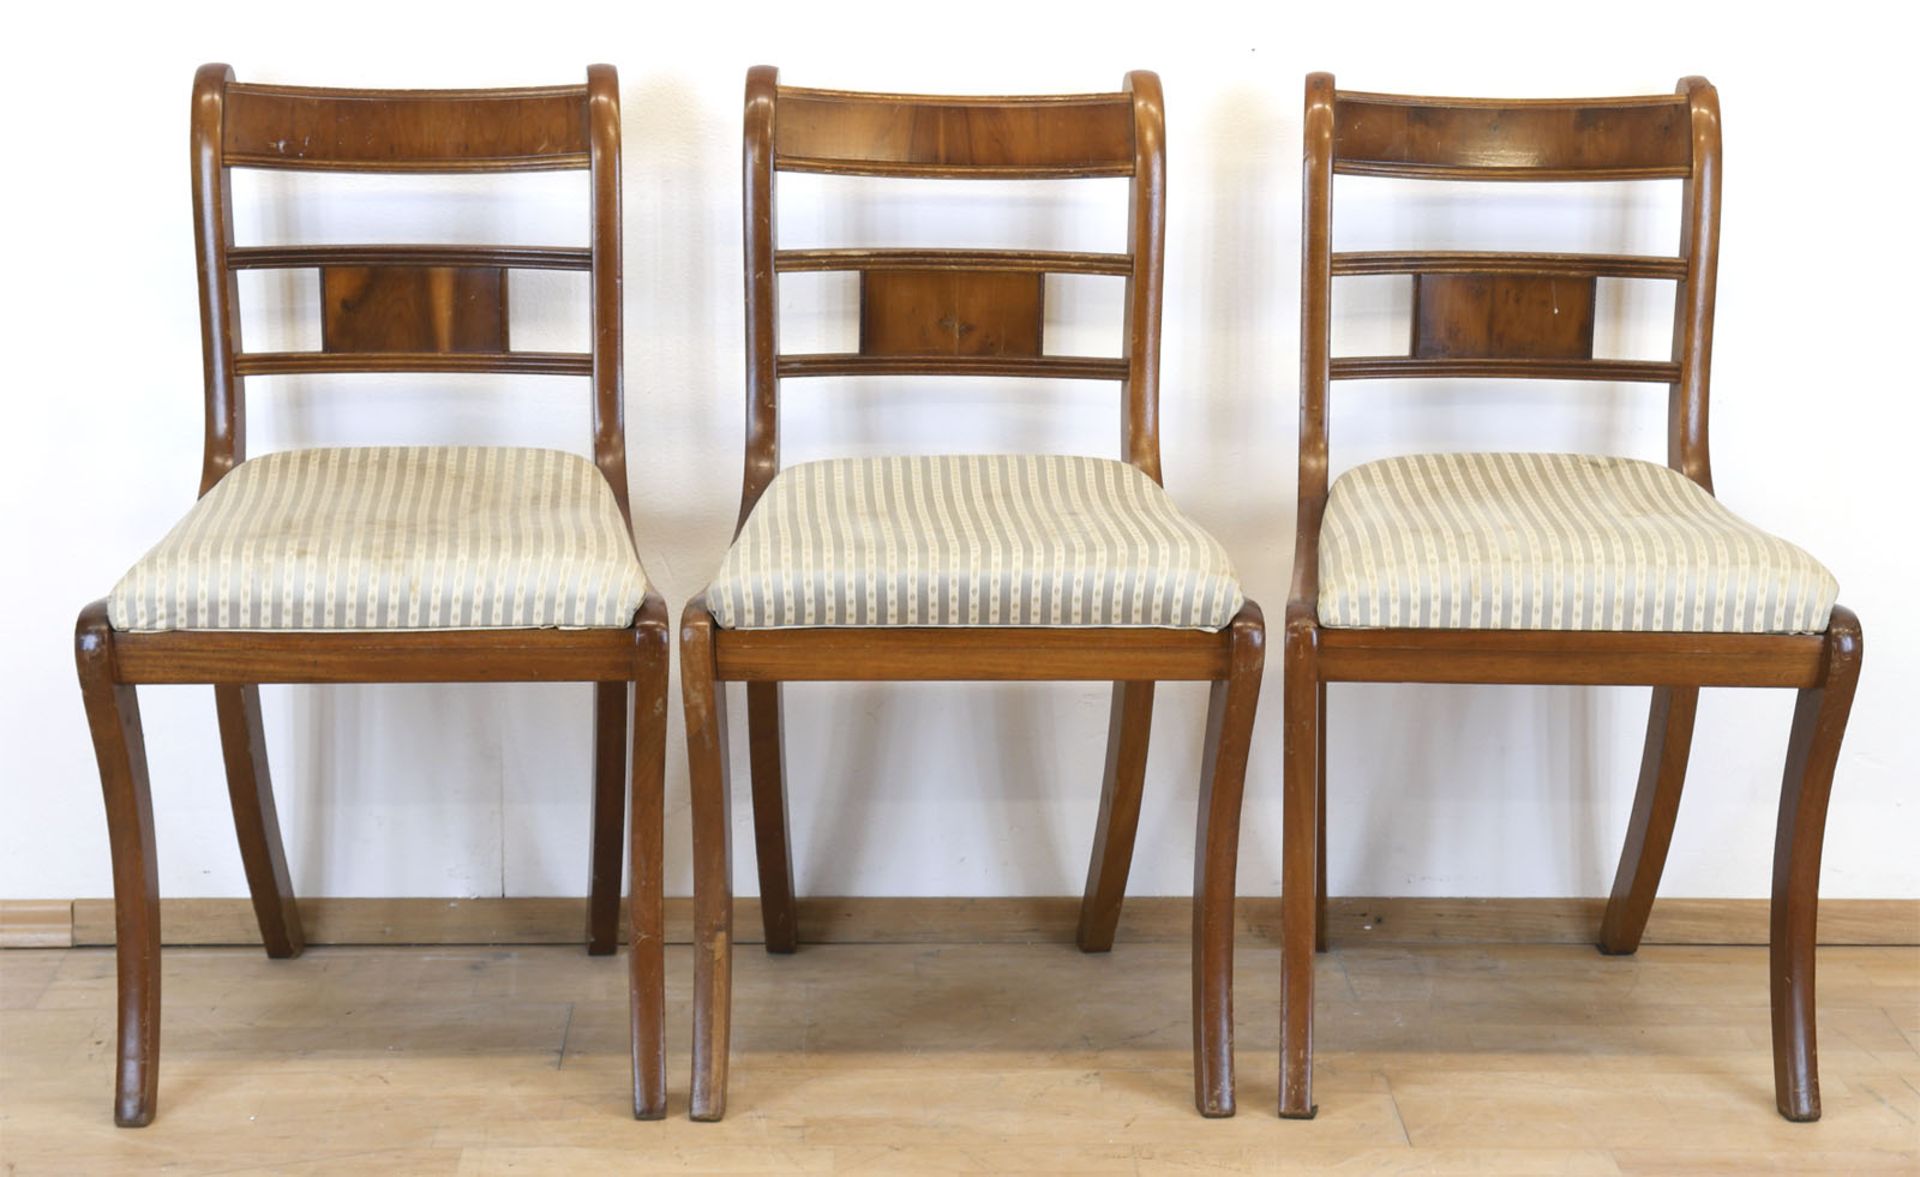 3 Stühle im Biedermeierstil, Mahagoni, furniert, gepolsterter Sitz, verstrebte Rückenlehne, Gebrauc